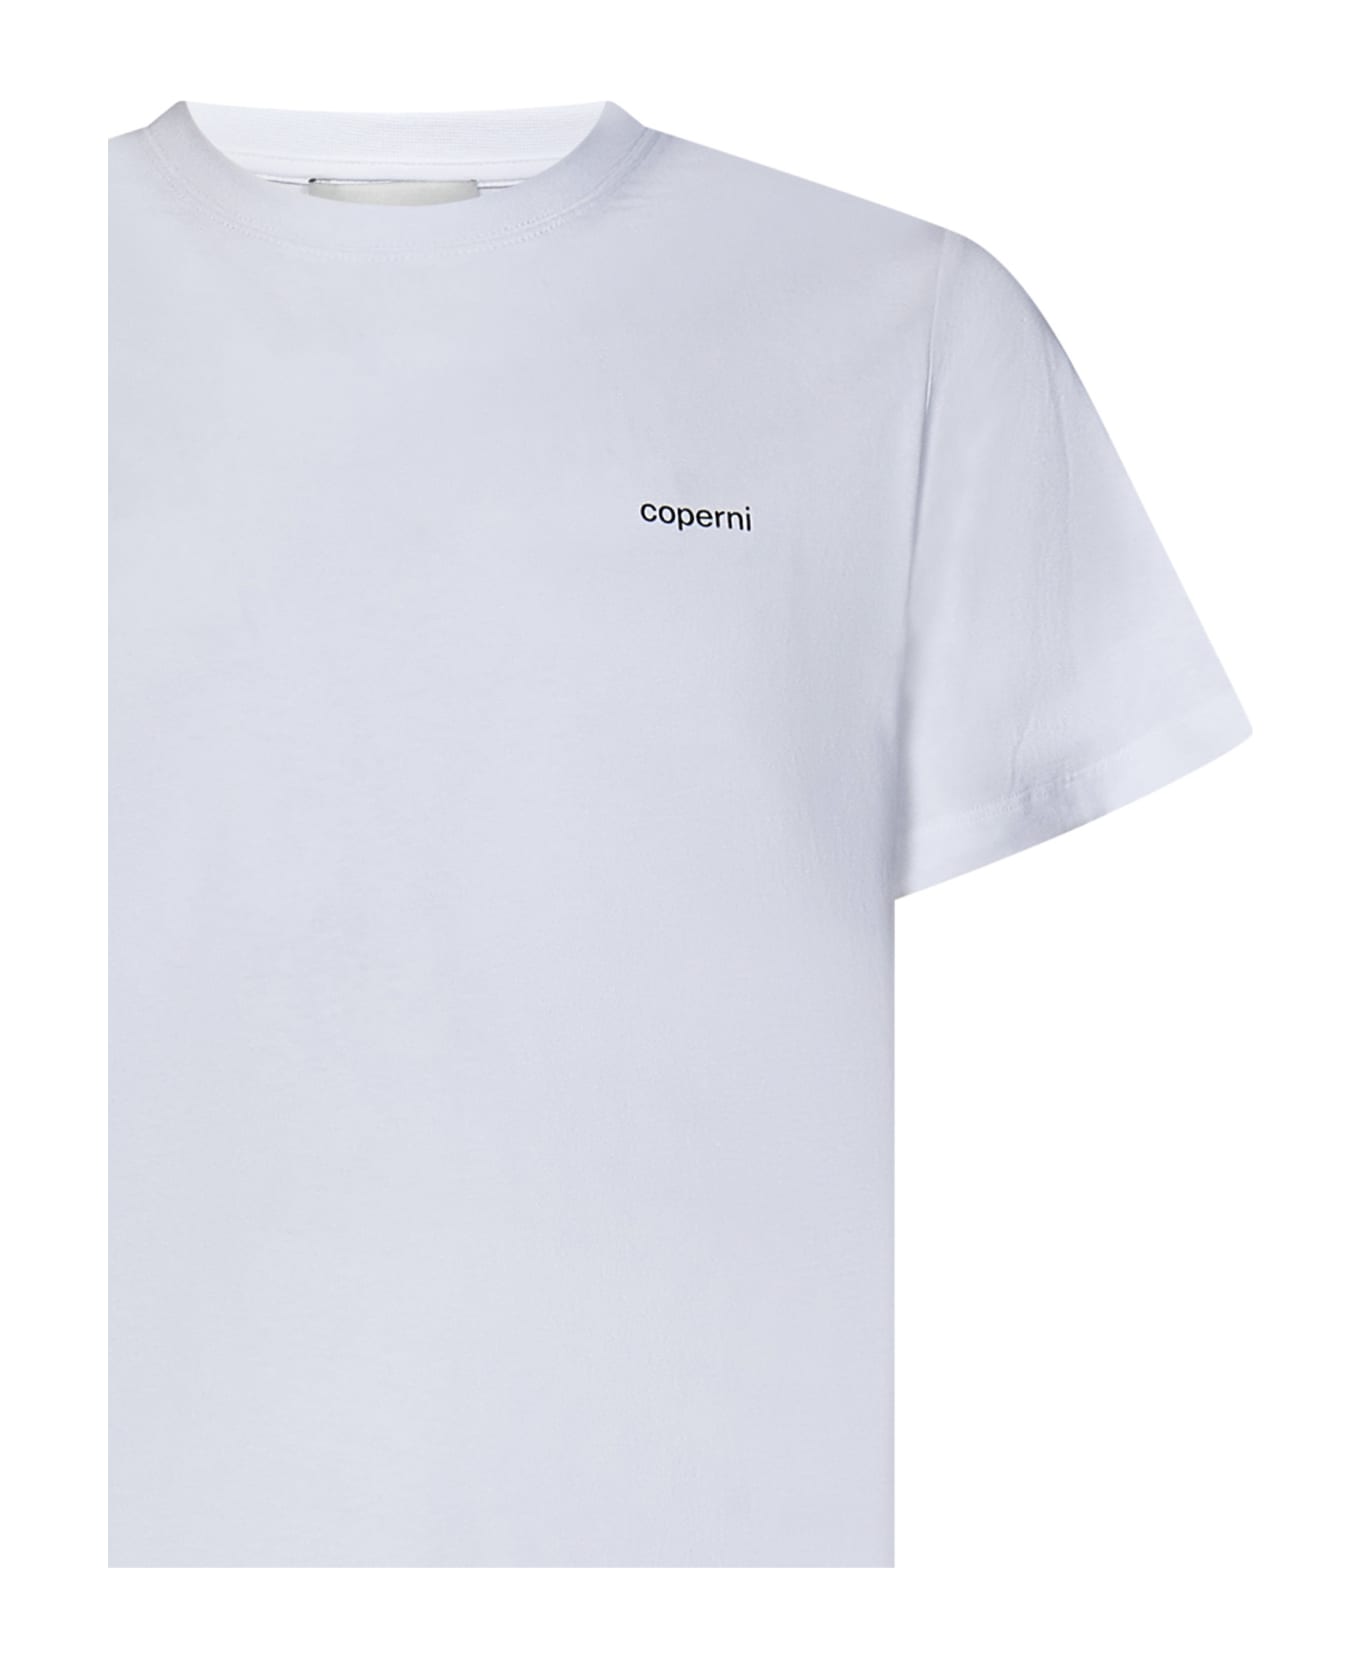 Coperni T-shirt - WHITE